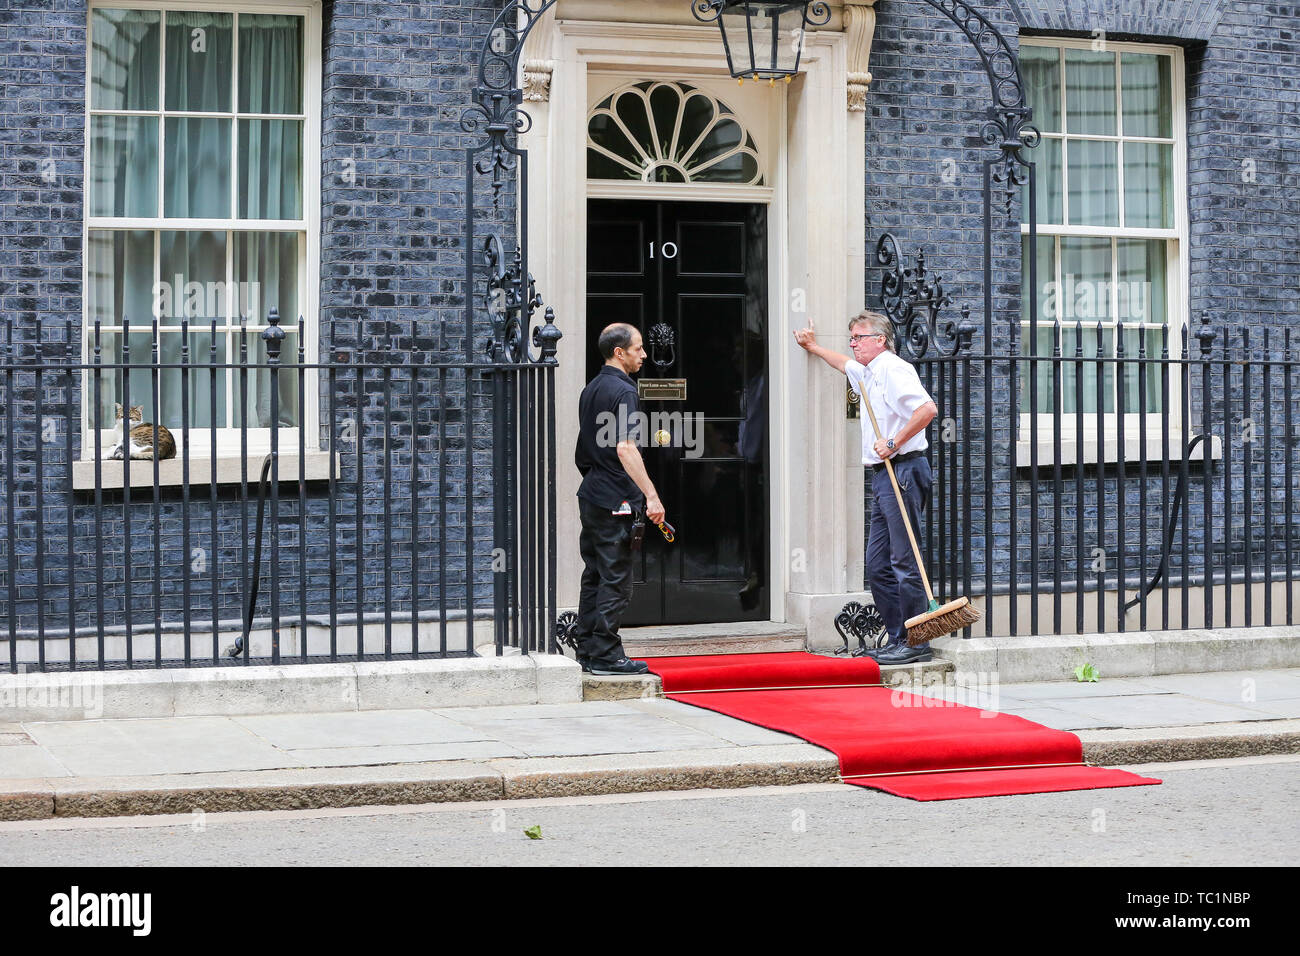 Handwerker legen Sie einen roten Teppich für den US-Präsidenten Donald Trump und First Lady Melania Trump Besuch in Downing Street am zweiten Tag Ihrer dreitägigen Staatsbesuch in Großbritannien. Larry, der 10 Downing Street cat und Chief Mouser des Cabinet Office schläft auf der Fensterbank. Stockfoto